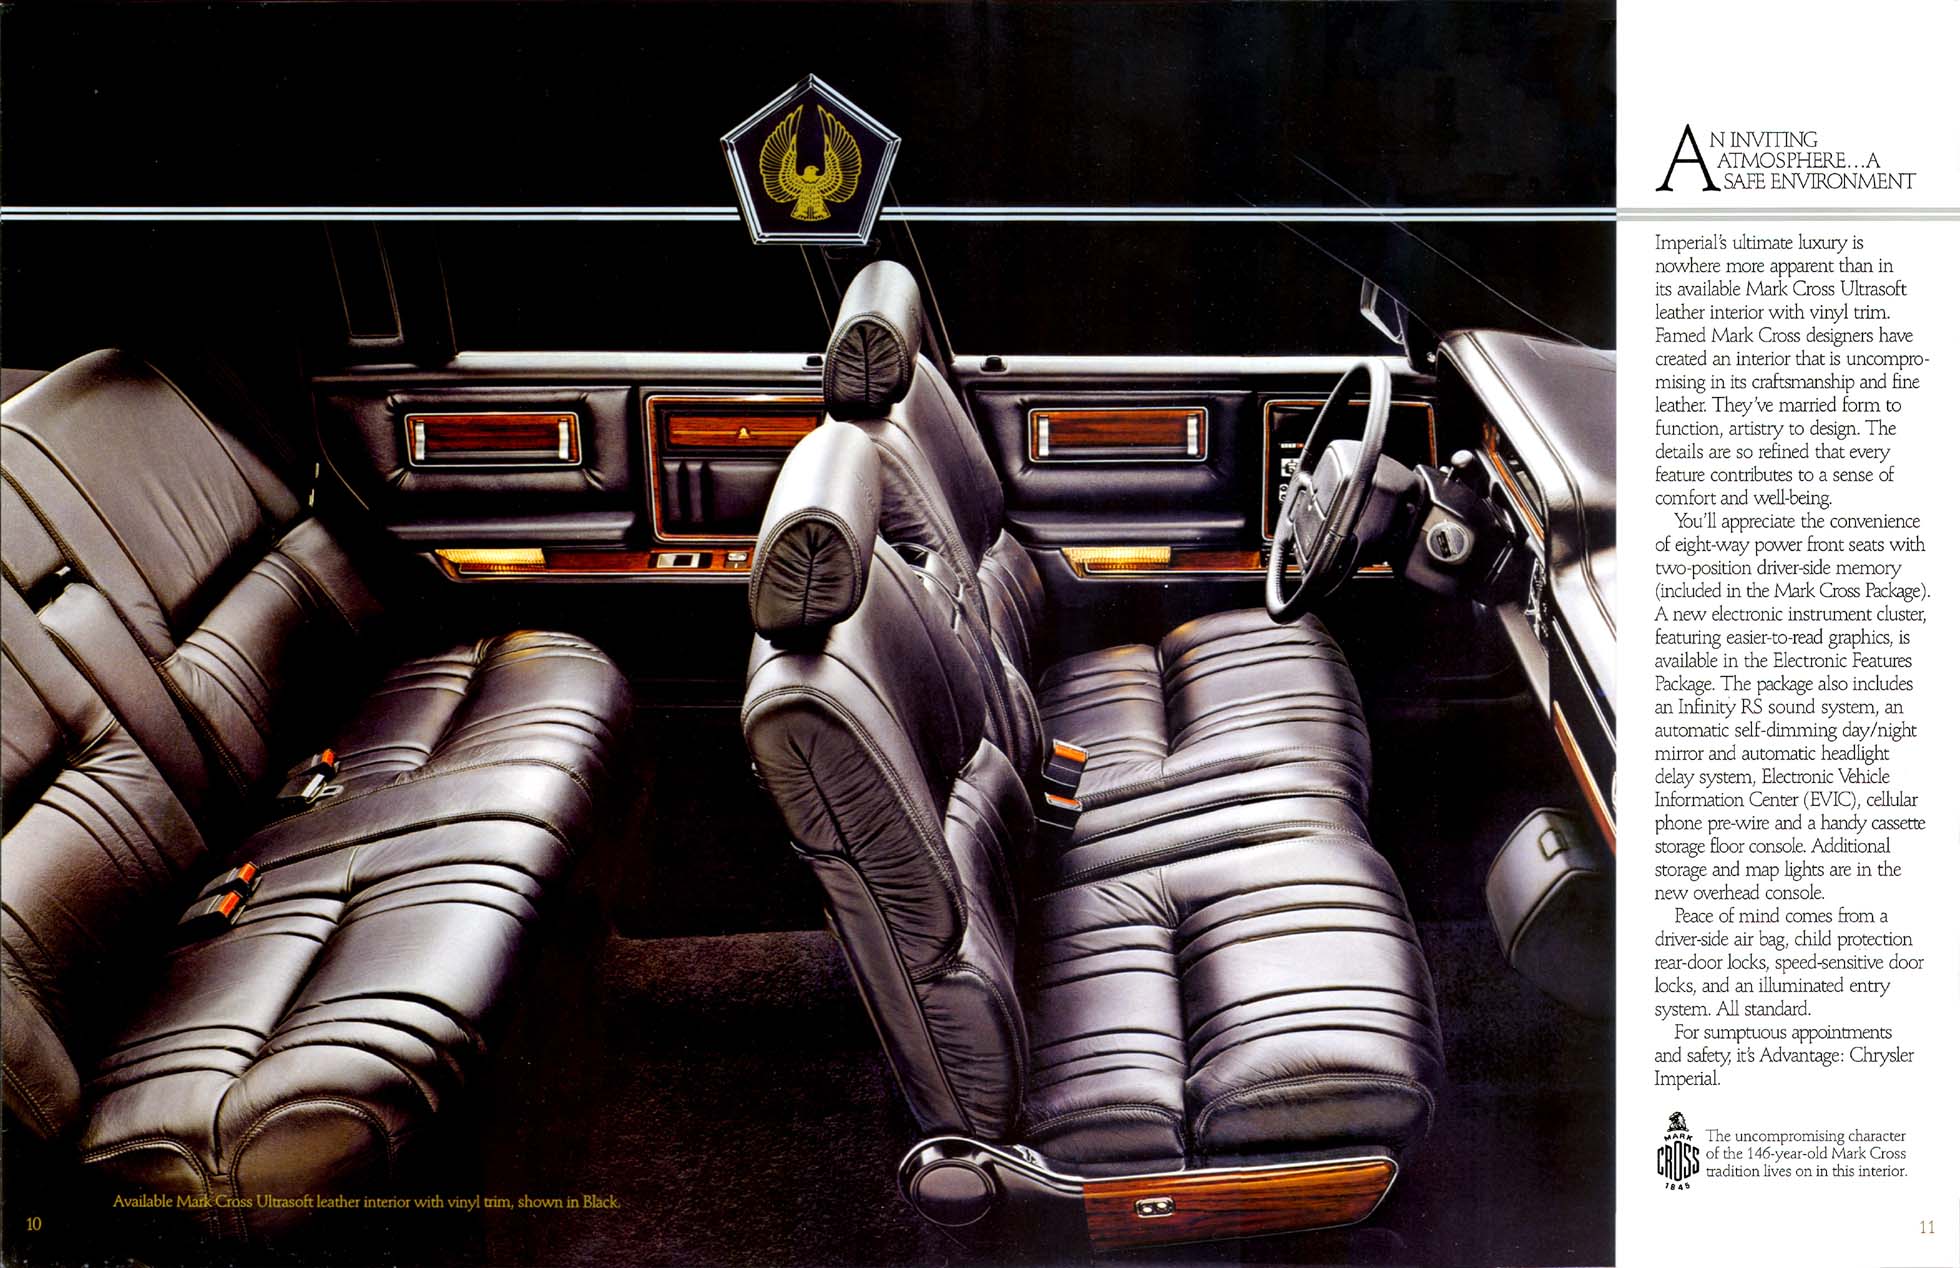 1992 Chrysler Imperial-10-11